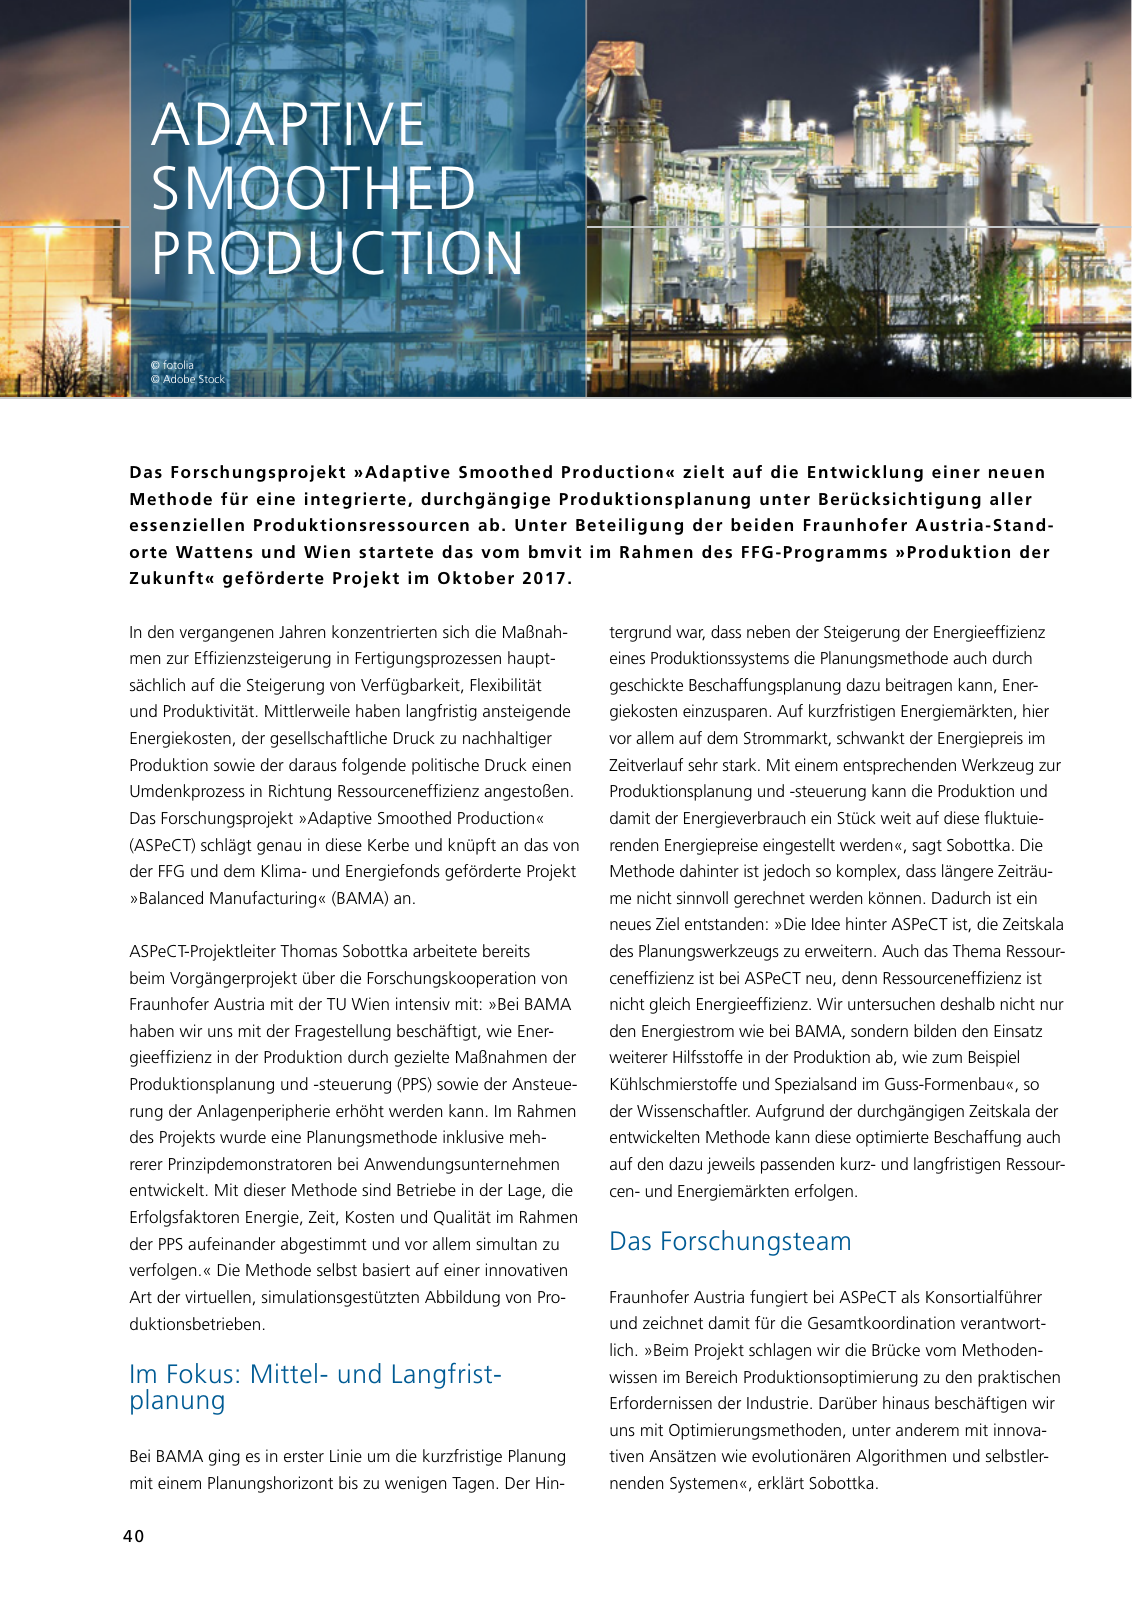 Vorschau Jahresbericht 2017 - Fraunhofer Austria Geschäftsbereich Produktions- und Logistikmanagment Seite 40